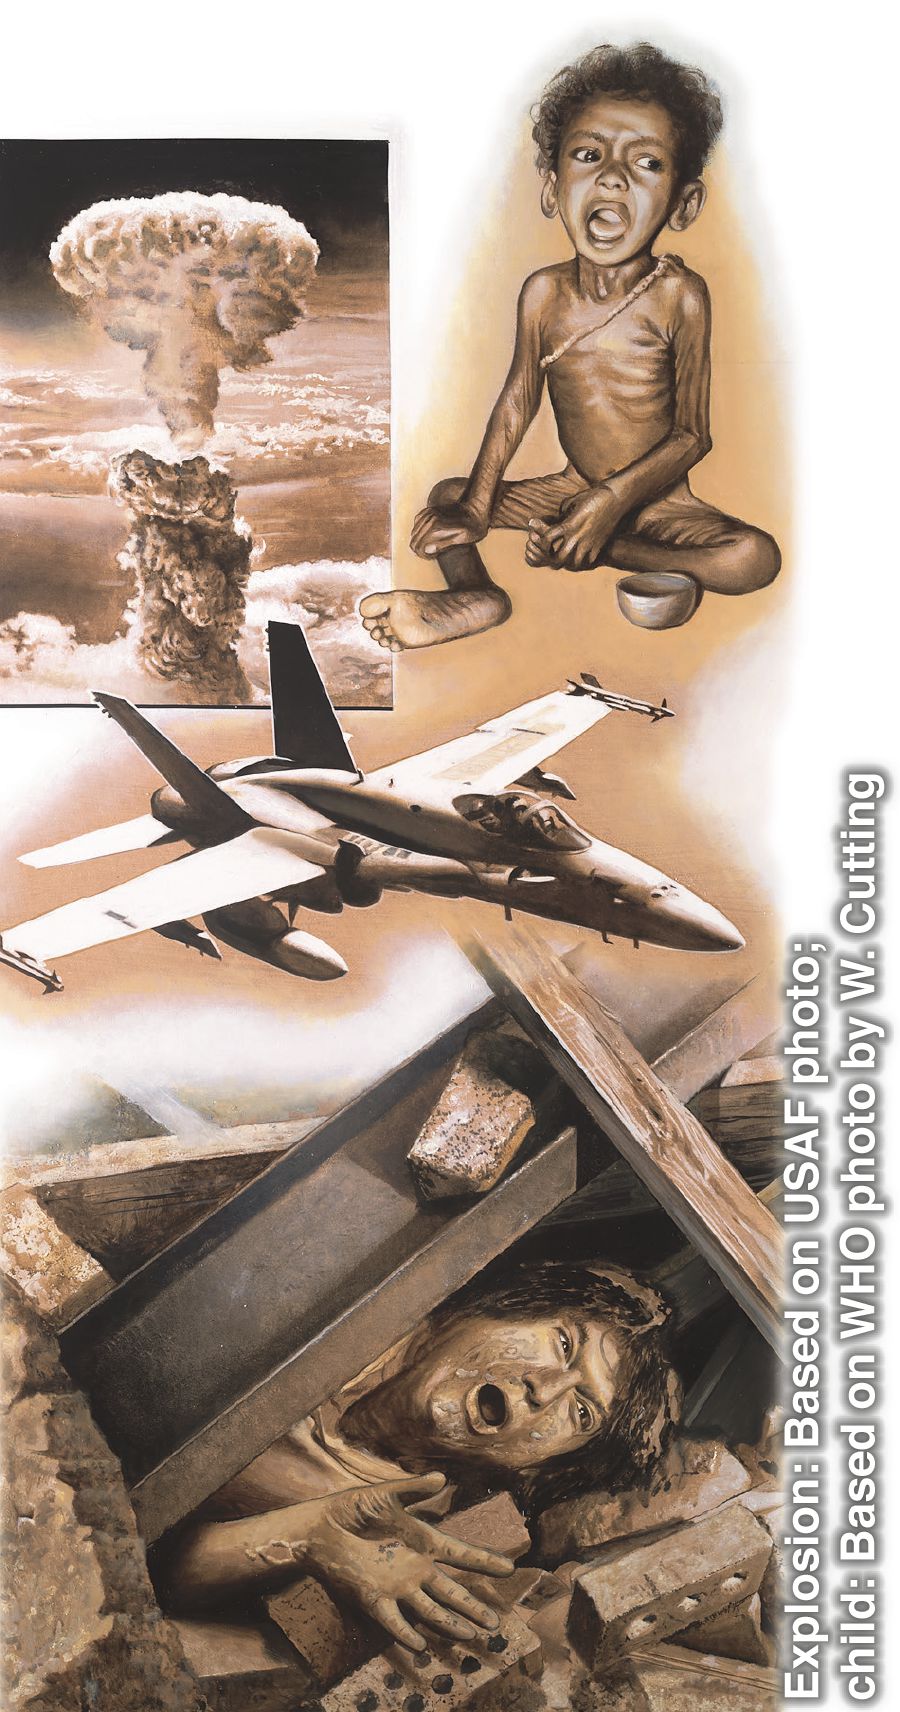 Նկարներ, որոնցում պատկերված են վերջին օրերի իրադարձություններ. ռումբի պայթյուն, թերսնումից հյուծված երեխա, ռազմական ինքնաթիռ, մարդը՝ երկրաշարժից ավերված տան փլատակների տակ